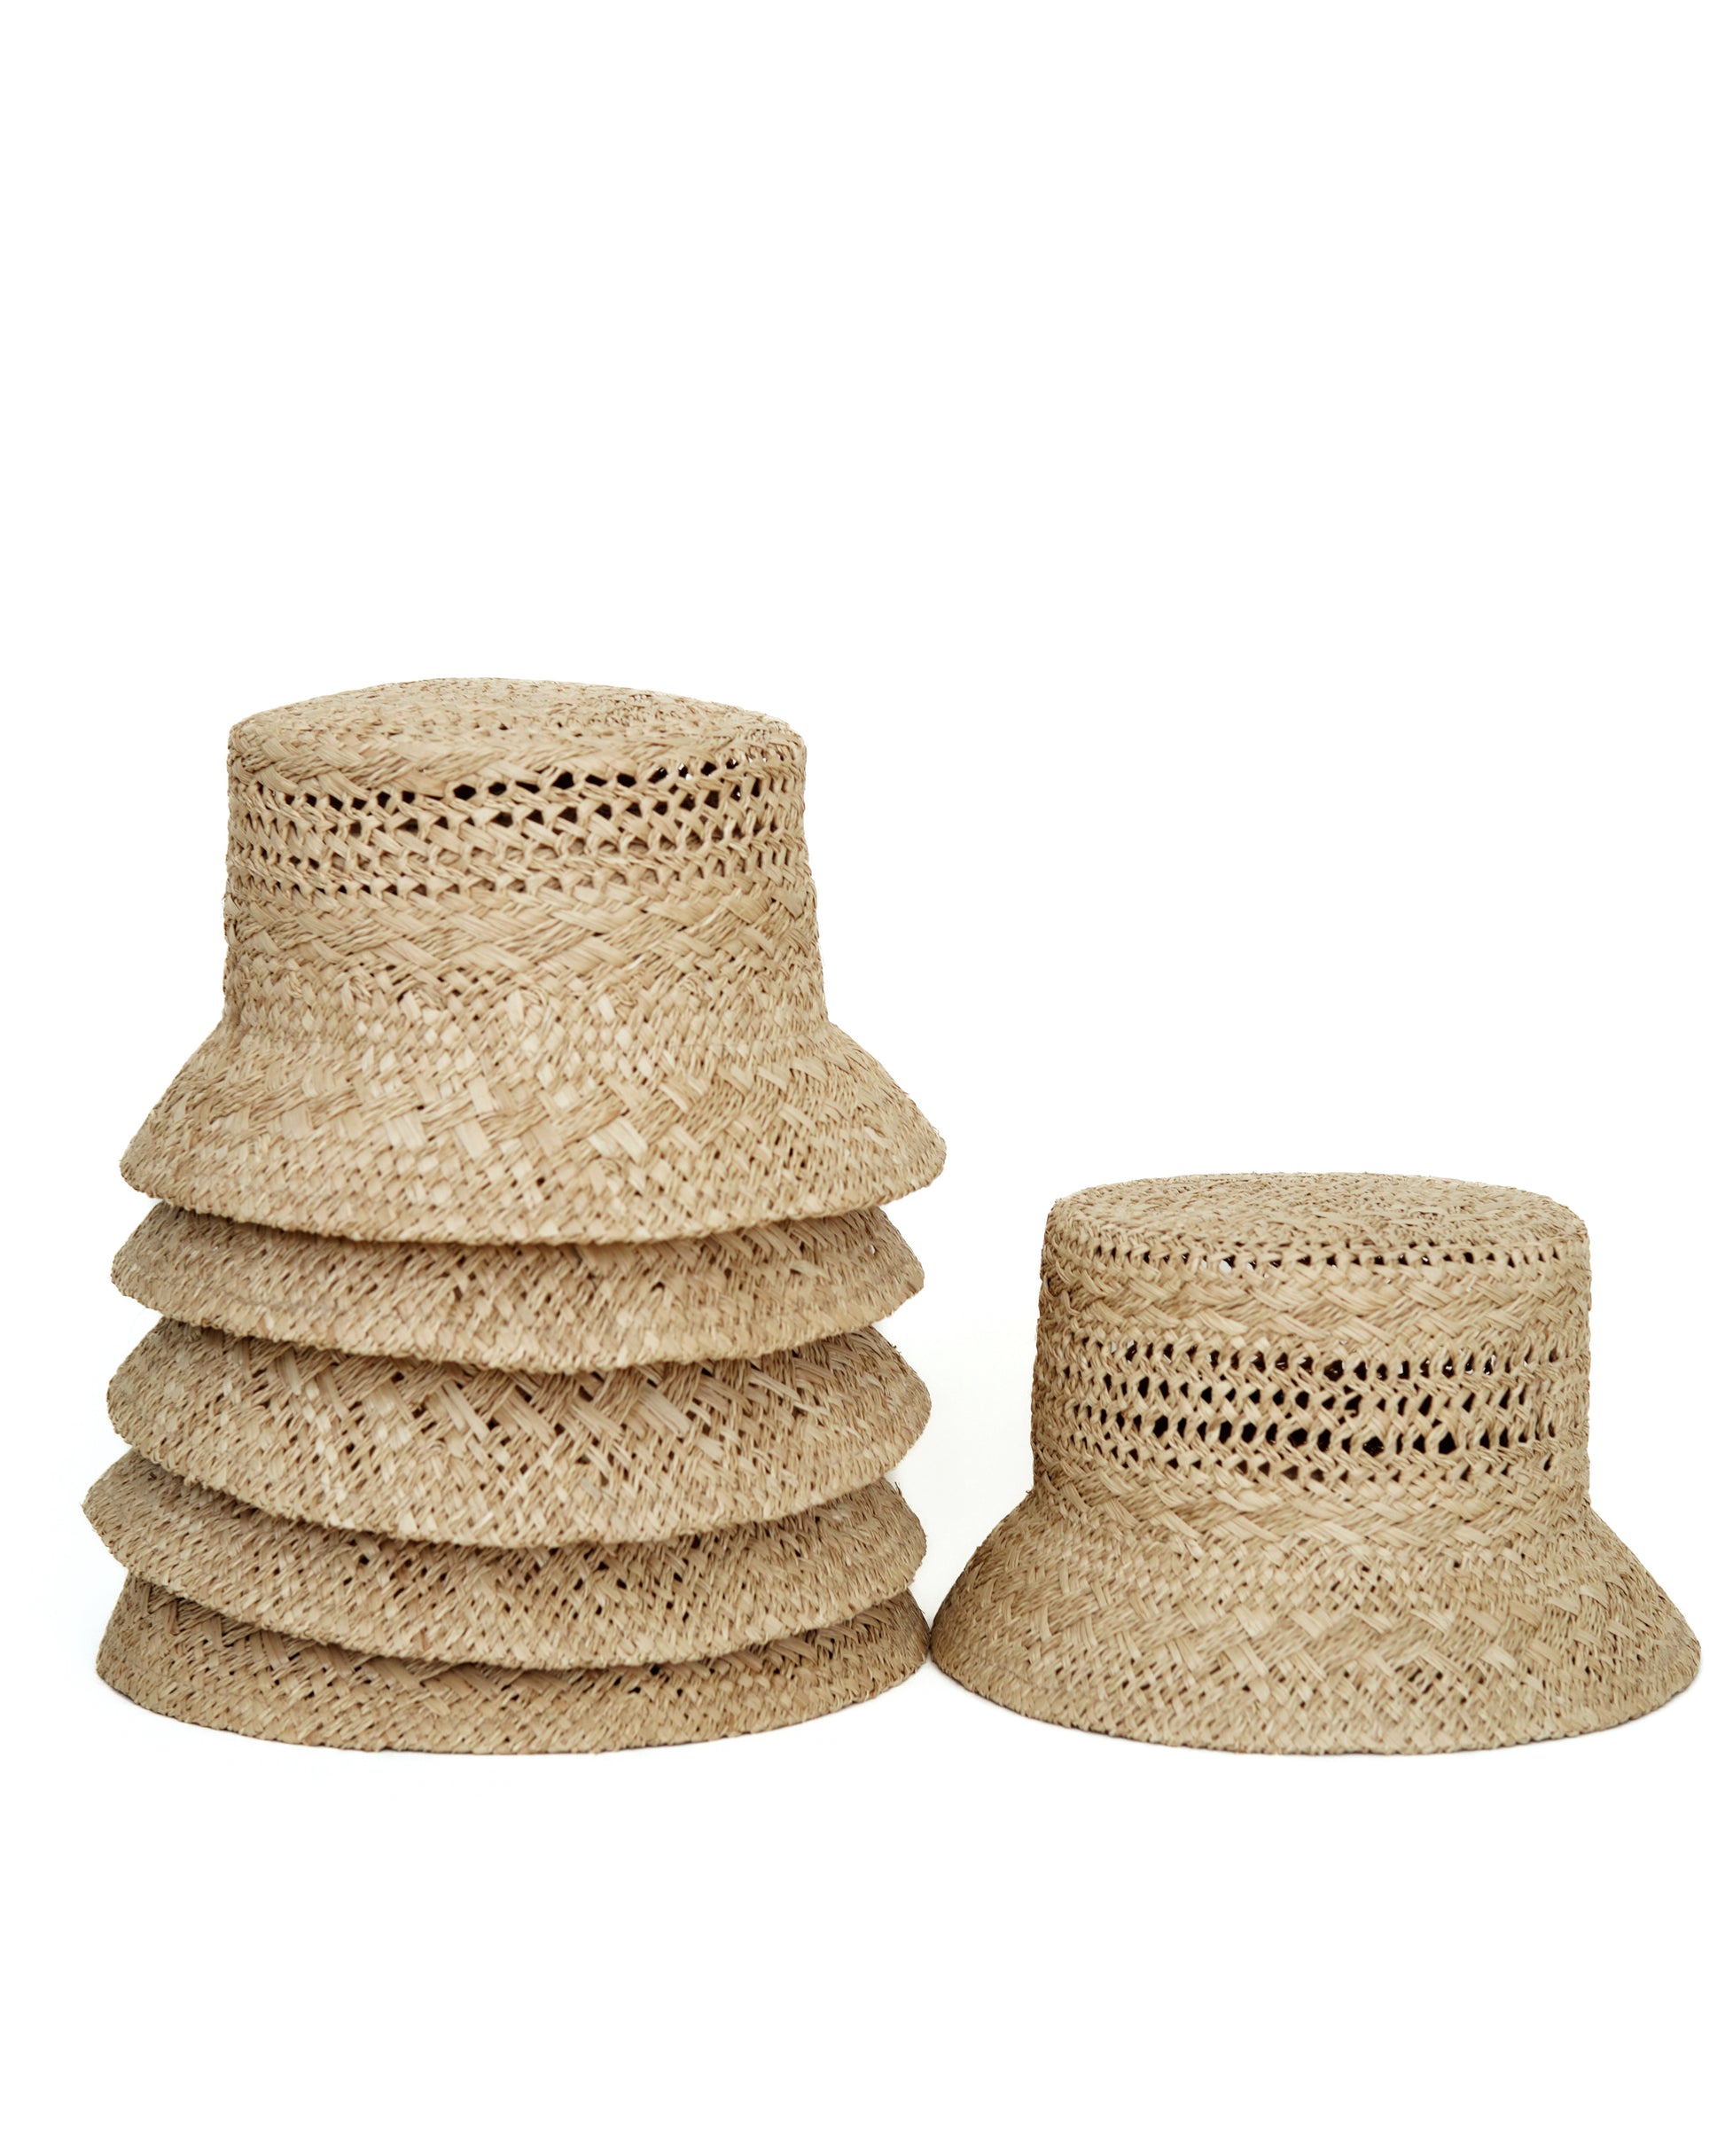 Raffia Bucket Hat | Women's Straw Hat | Women's Bucket Hat M/L (59)